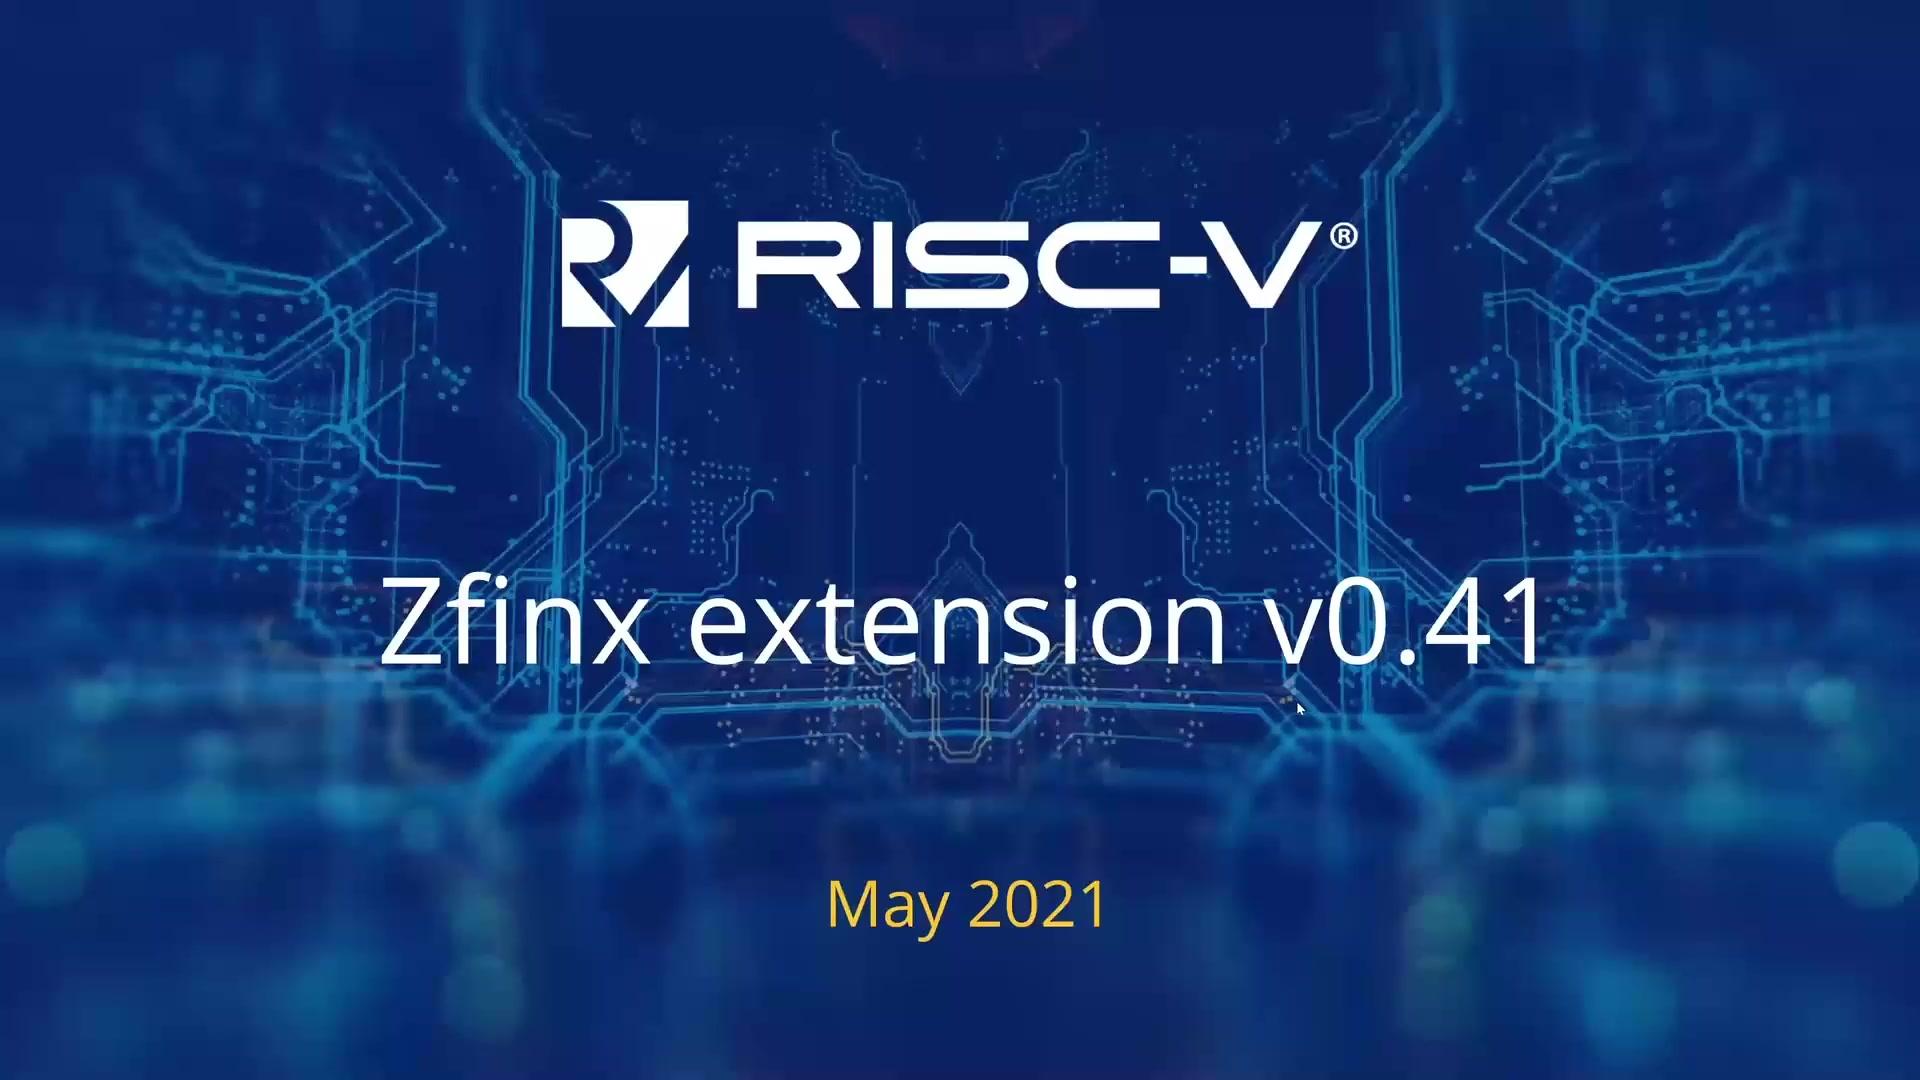 Tariq (Huawei) - Zfinx extension v0-41 - 第一届 RISC-V 1